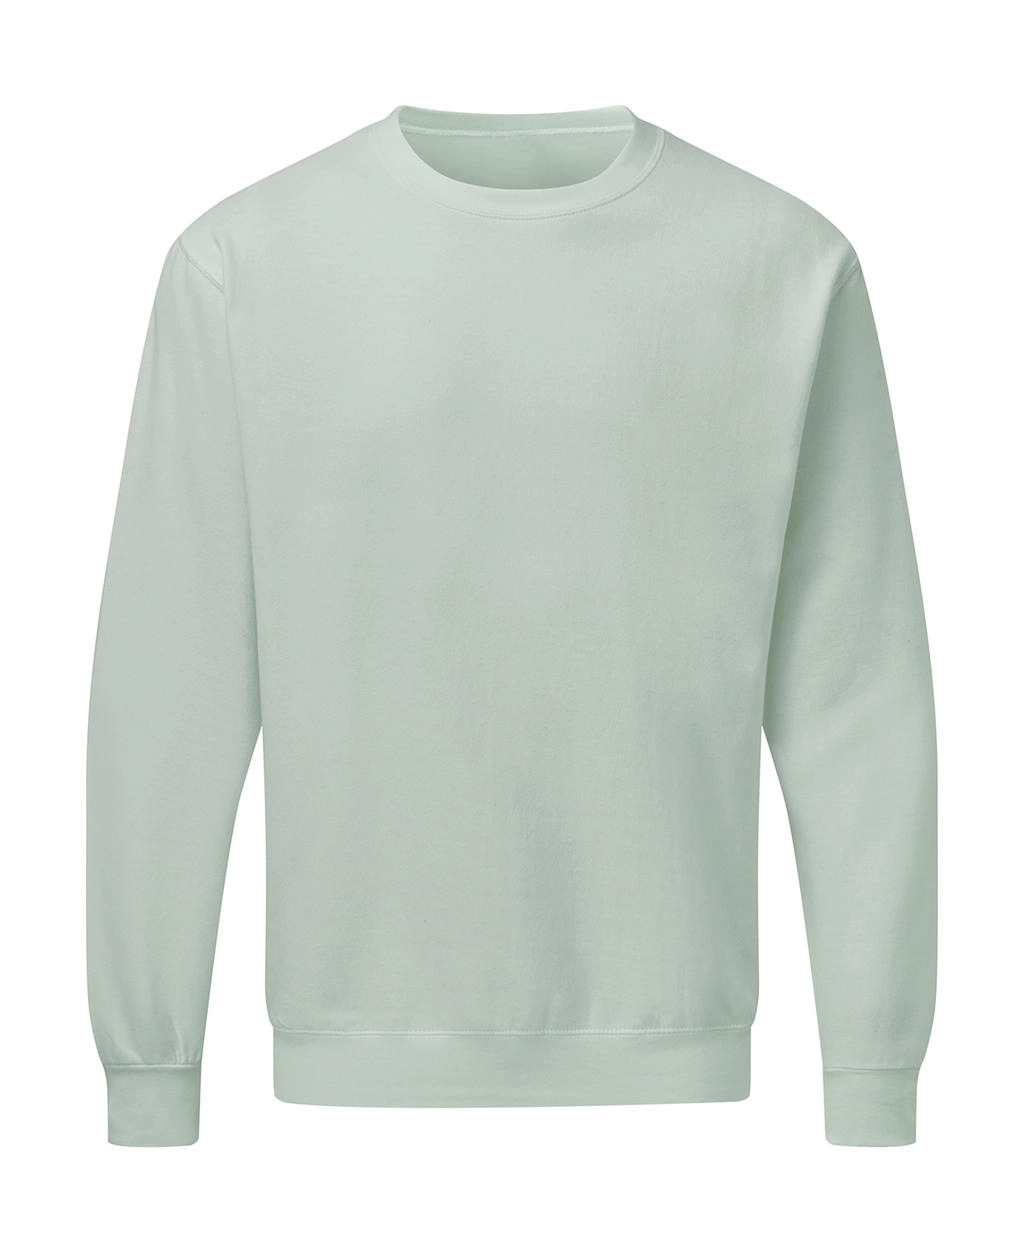 Crew Neck Sweatshirt Men zum Besticken und Bedrucken in der Farbe Mercury Grey mit Ihren Logo, Schriftzug oder Motiv.